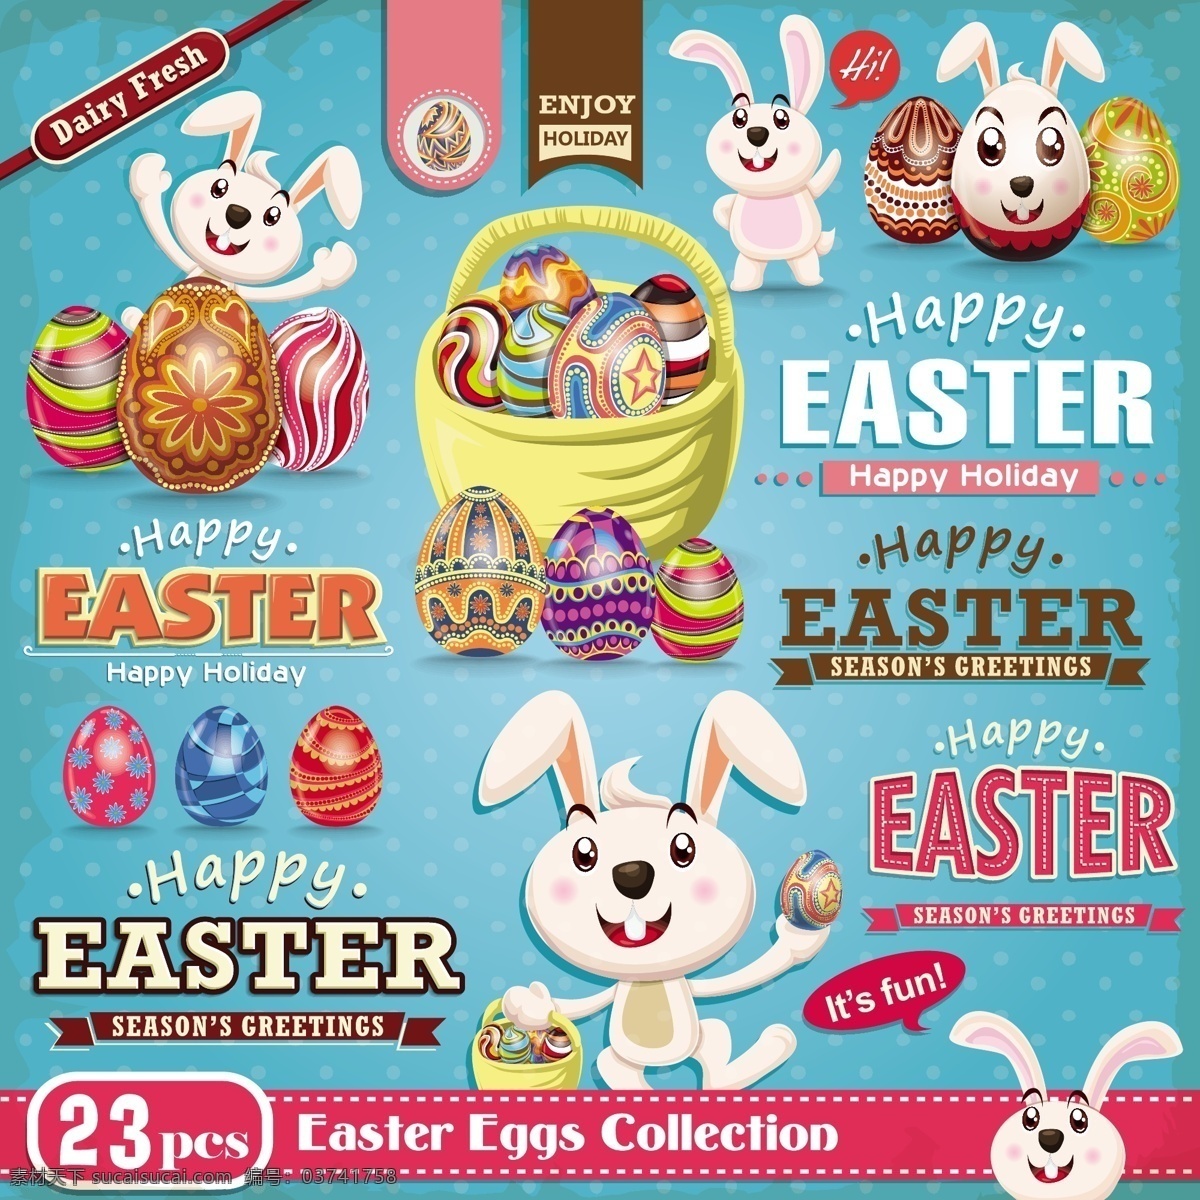 兔子 彩蛋 元素 复活节 海报 矢量 复古 边框 卡通 矢量素材 鸡蛋 插画